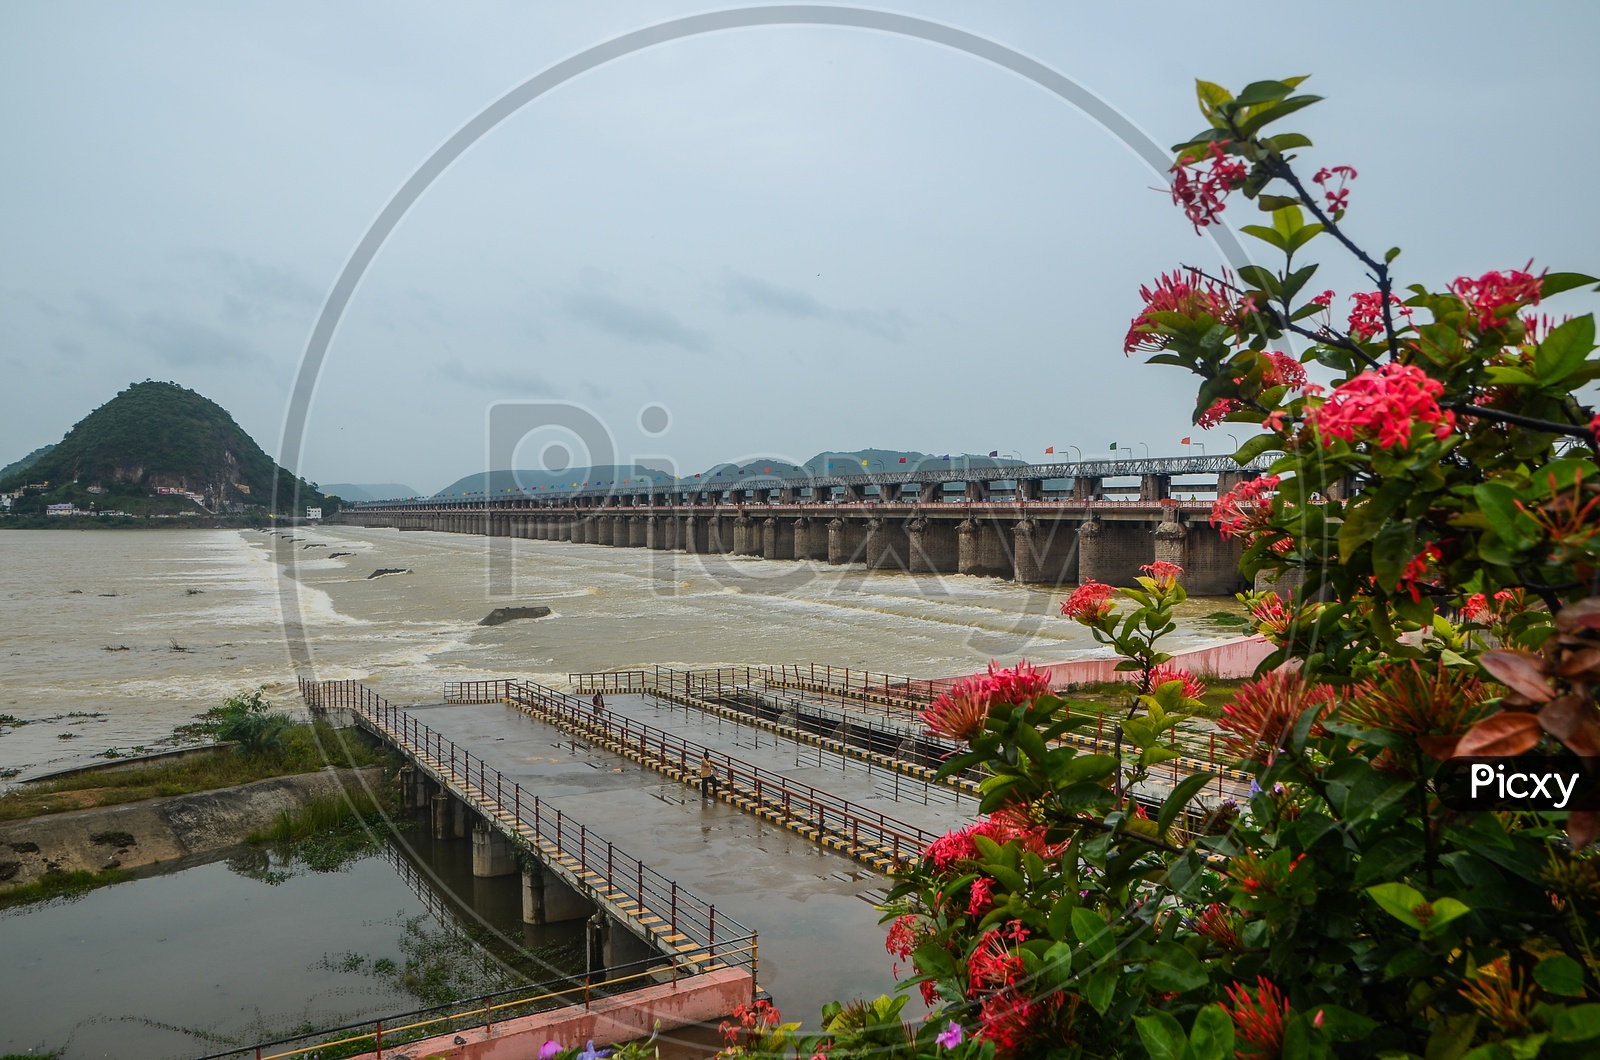 Prakasam barrage, Krishna river